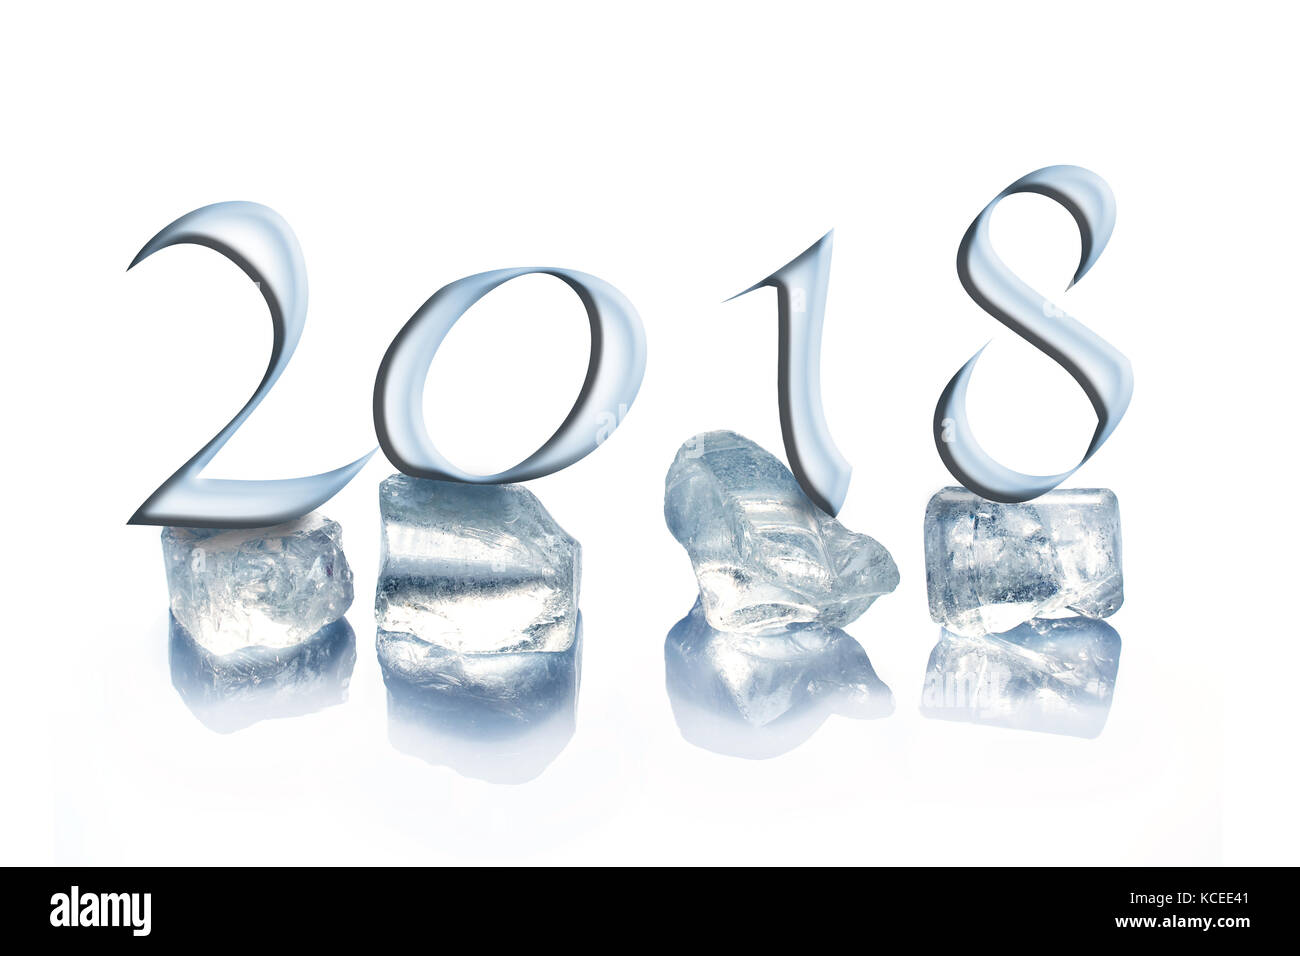 2018 cubetti di ghiaccio isolato su sfondo bianco Foto Stock